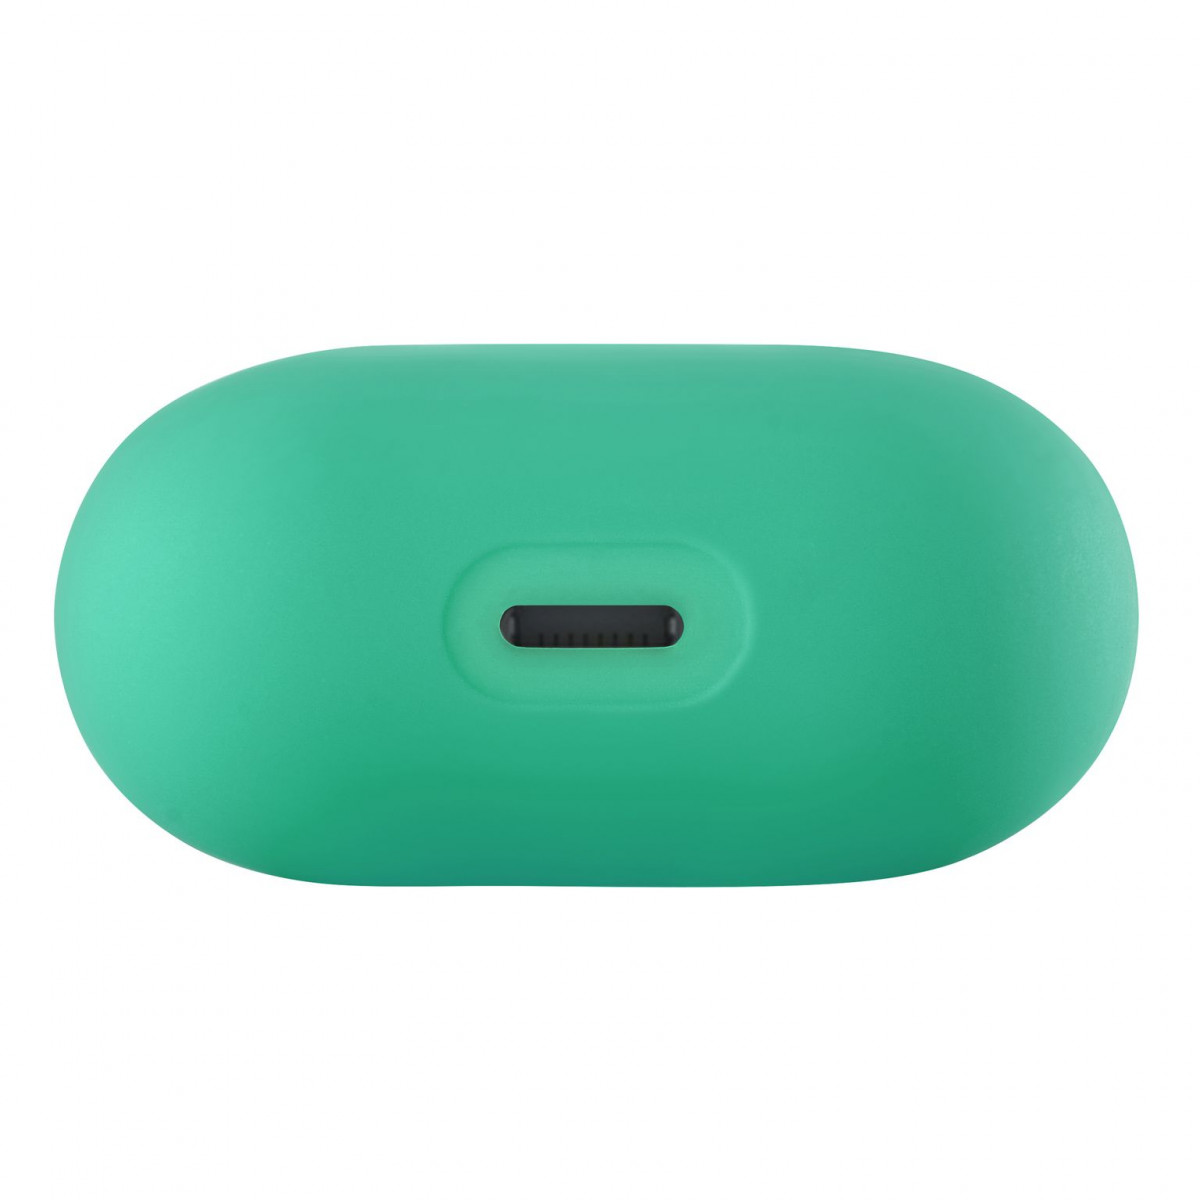 Ультратонкий силиконовый чехол Touch case для AirPods 1/2 Мята